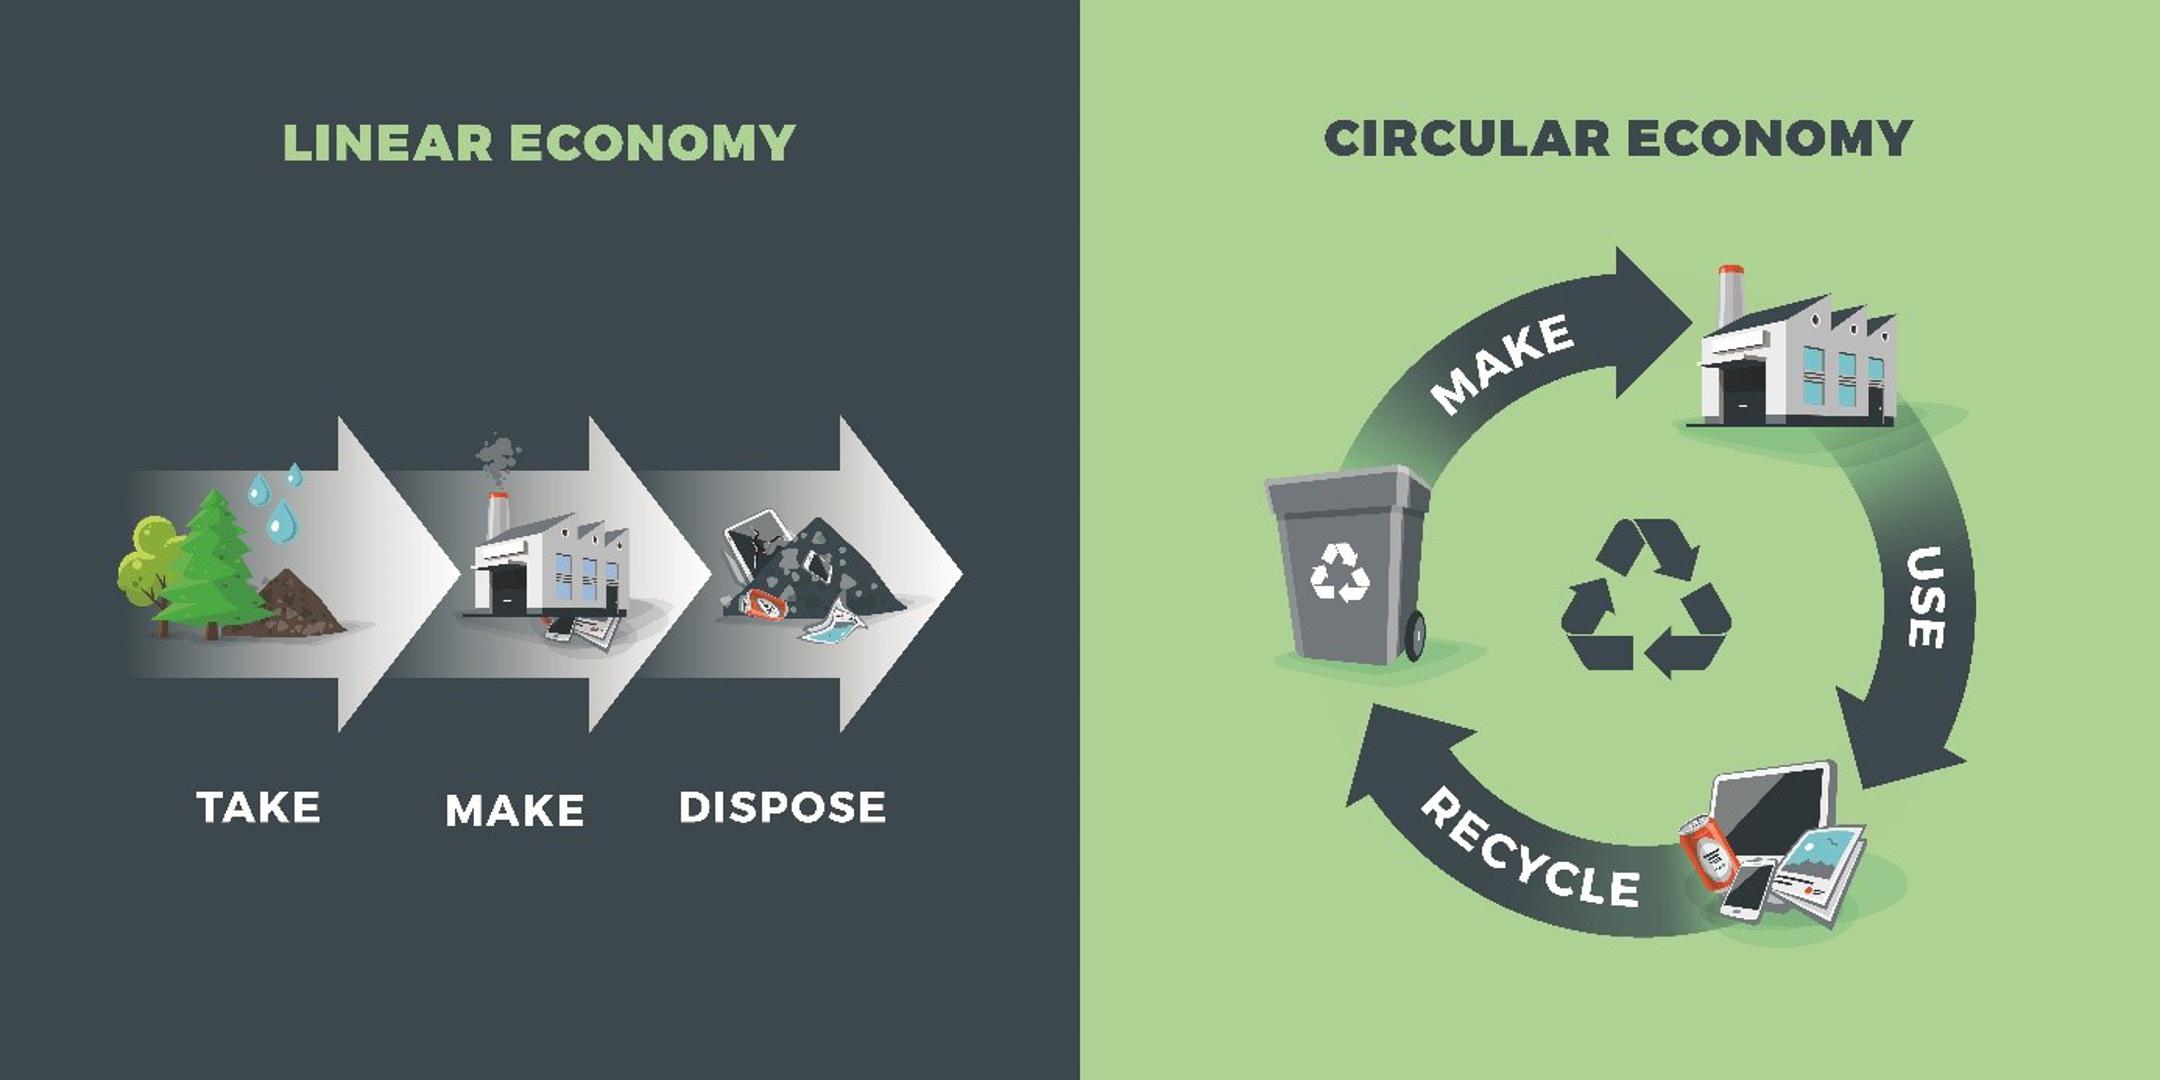 Za razliku od linearne ekonomije, kružno gospodarstvo teži prema smanjenju otpada i upotrebi svježih sirovina